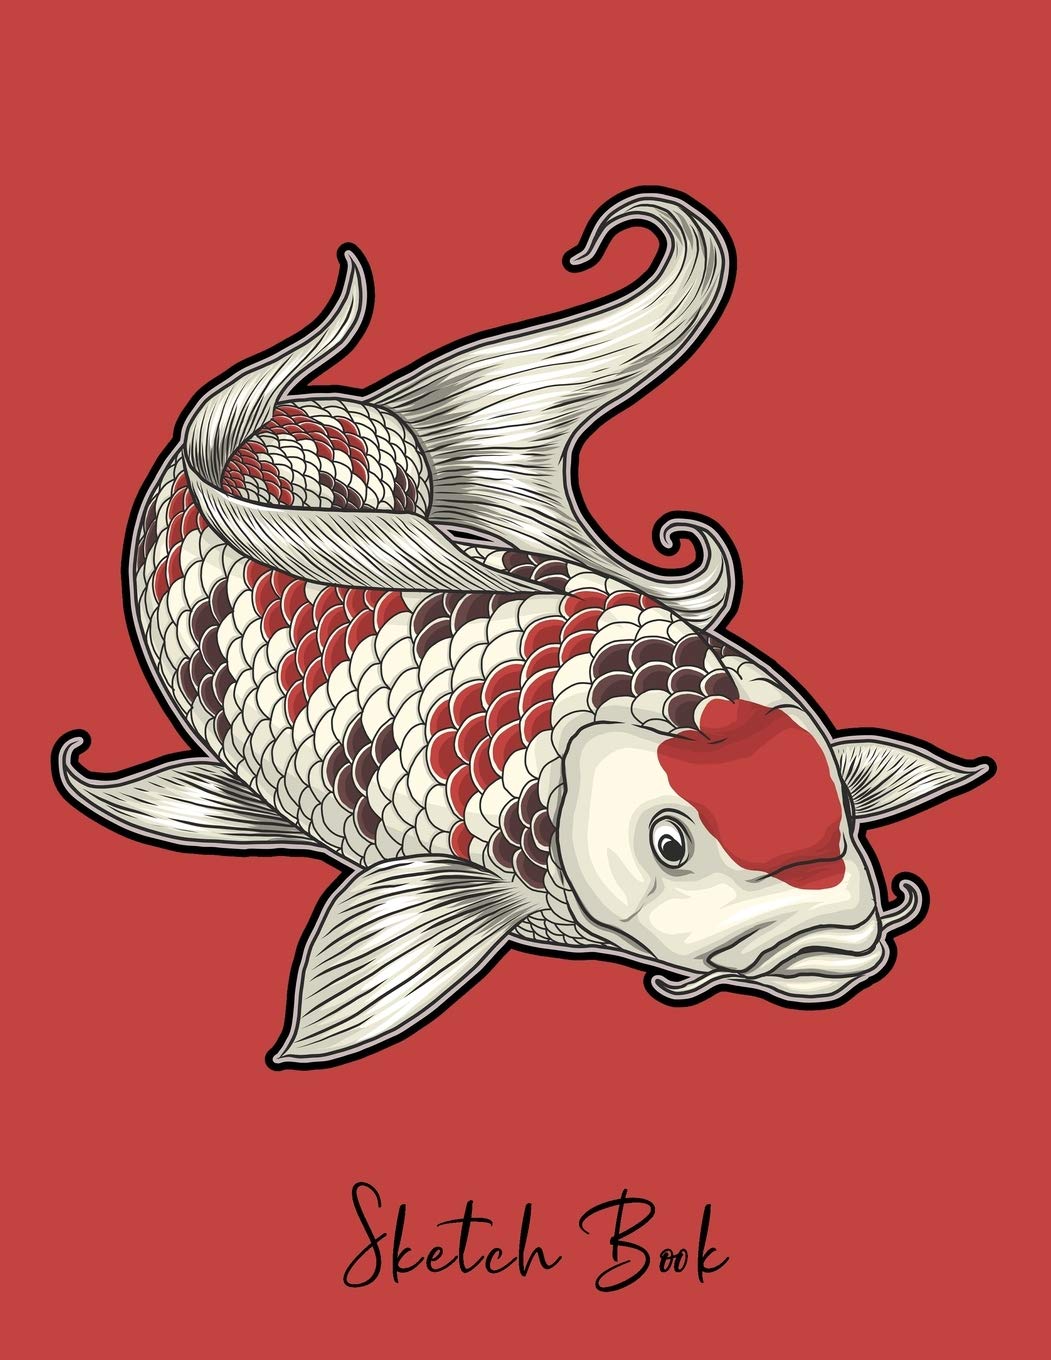 Hướng dẫn cách hình vẽ tattoo cá chép độc đáo và nghệ thuật nhất